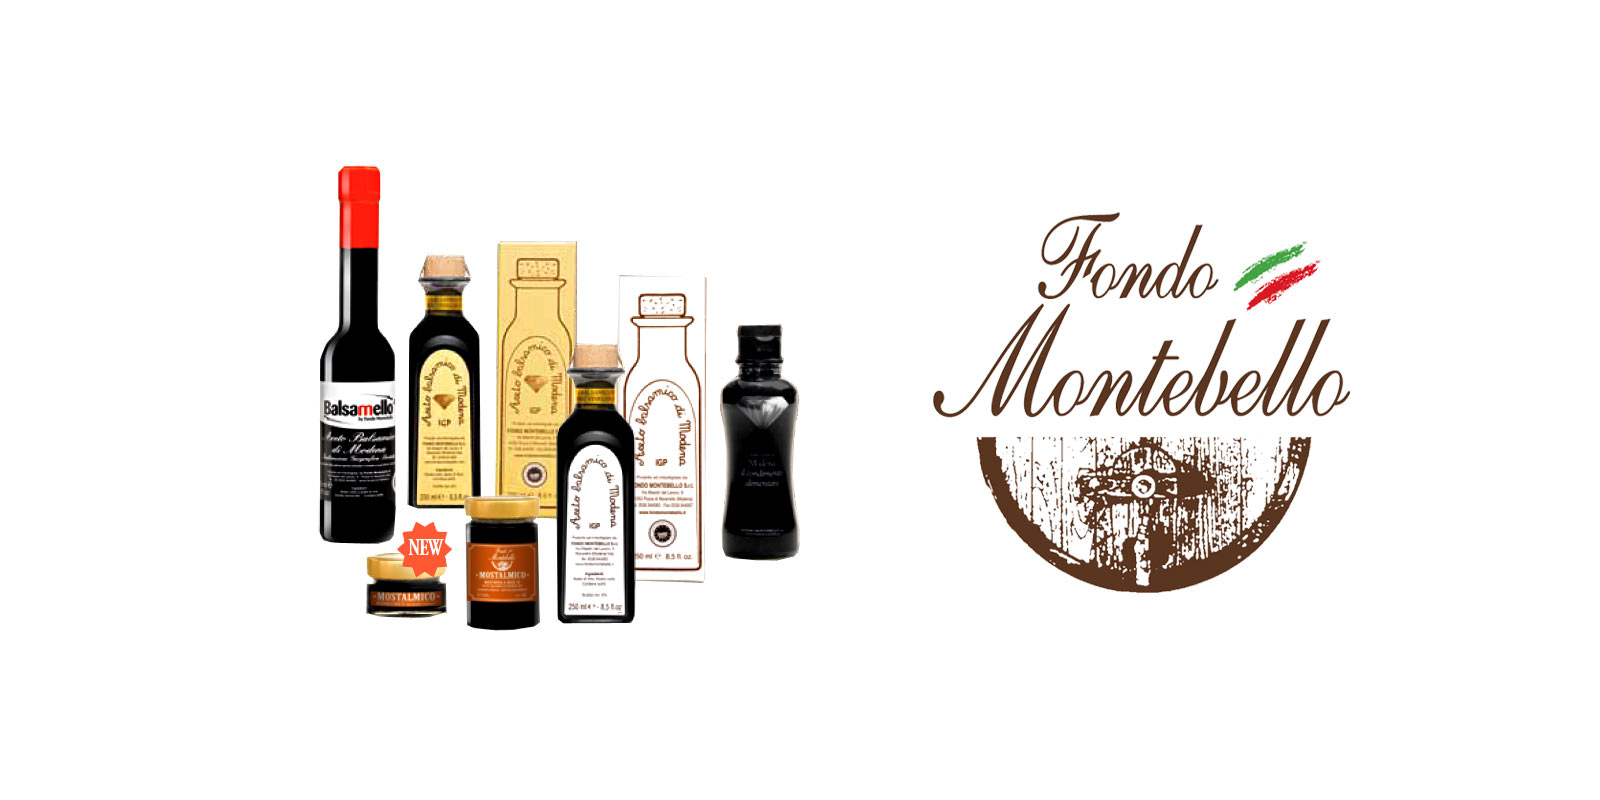 Aceto Balsamico Fondo Montebello Fondo Montebello utiliza metodos de produccion antiguos y tradicionales para producir un excelente vinagre balsamico de la region de Maranello en Italia.